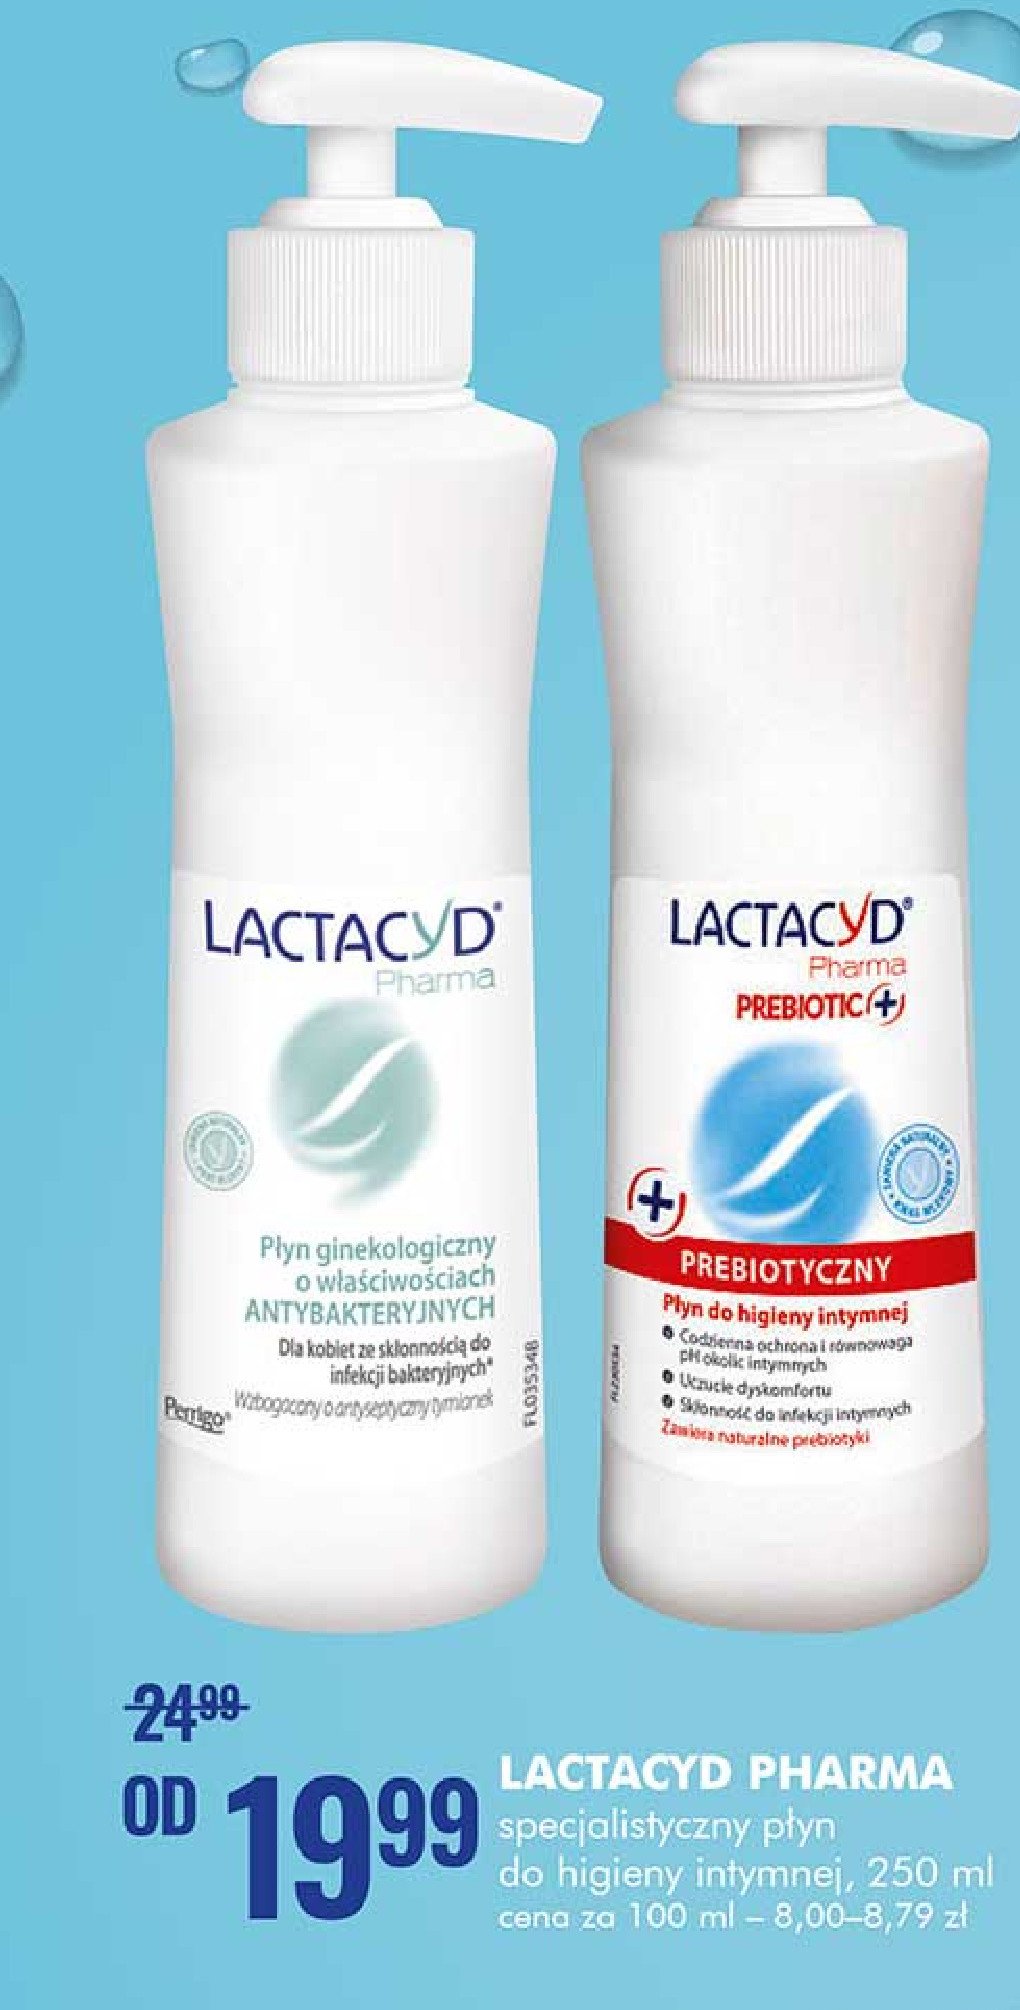 Płyn ginekologiczny antybakteryjny Lactacyd pharma promocje